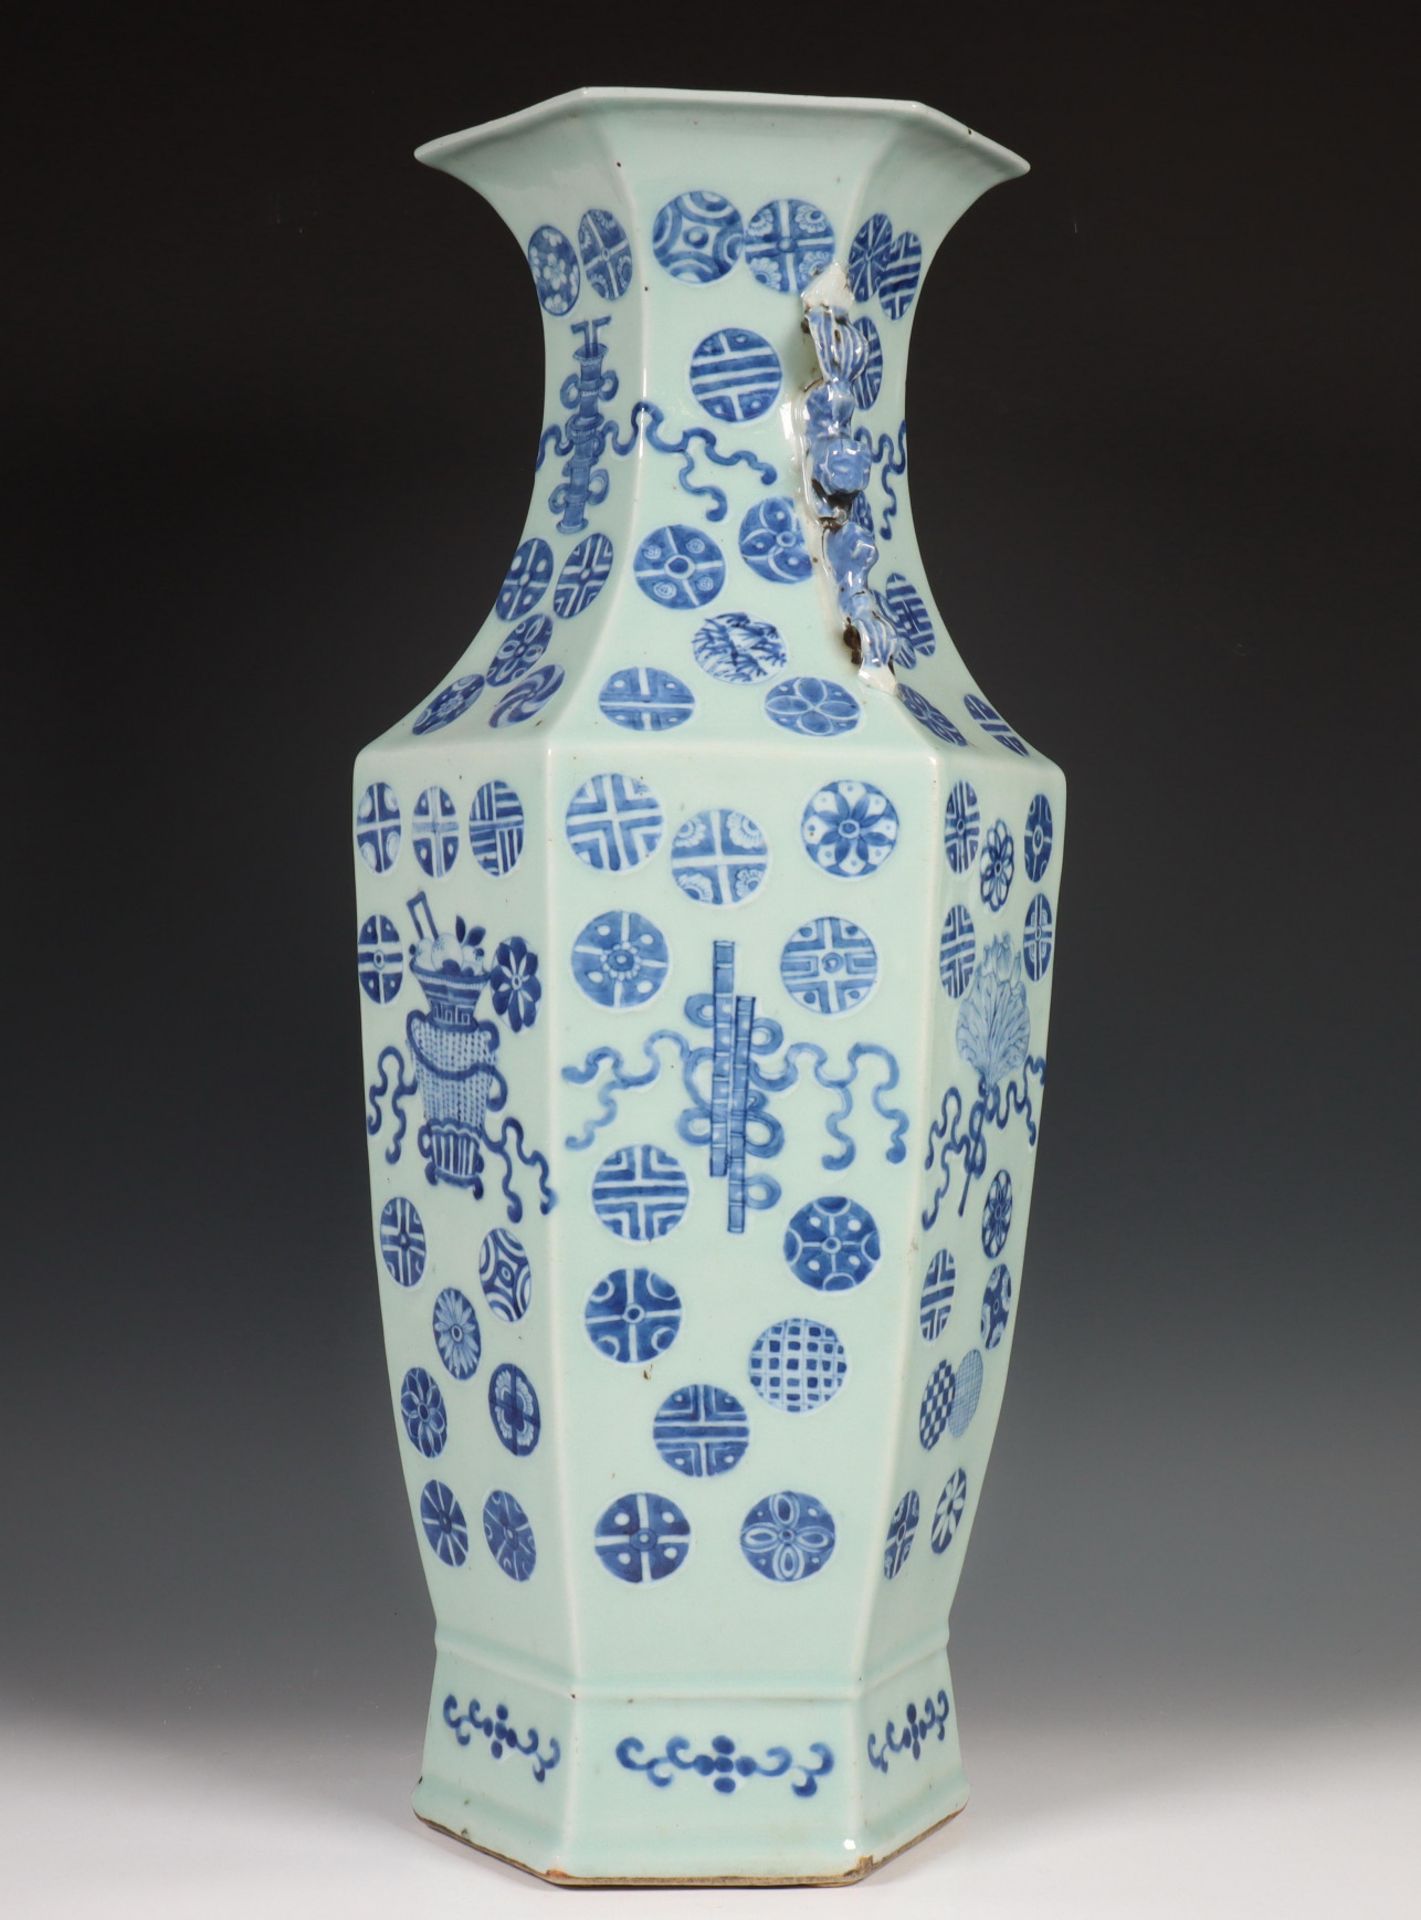 China, zeskantige blauw-wit porseleinen vaas, laat Qing dynastie, eind 19e eeuw, - Bild 3 aus 9